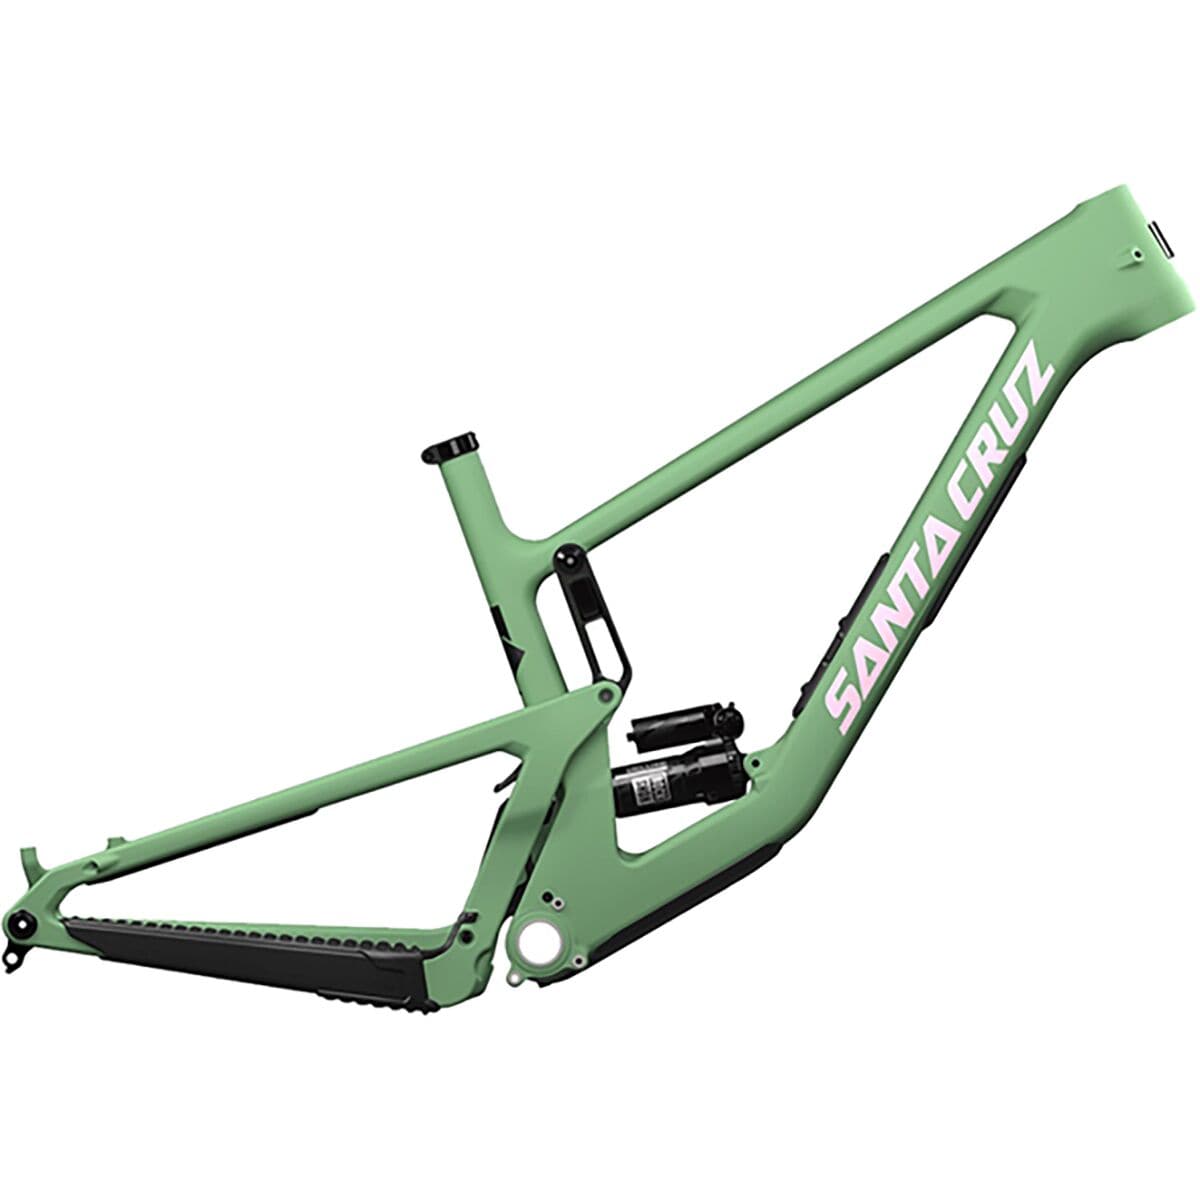 Santa Cruz Bicycles 5010 CC Mountain Bike Frame Matte Spumoni Green, M